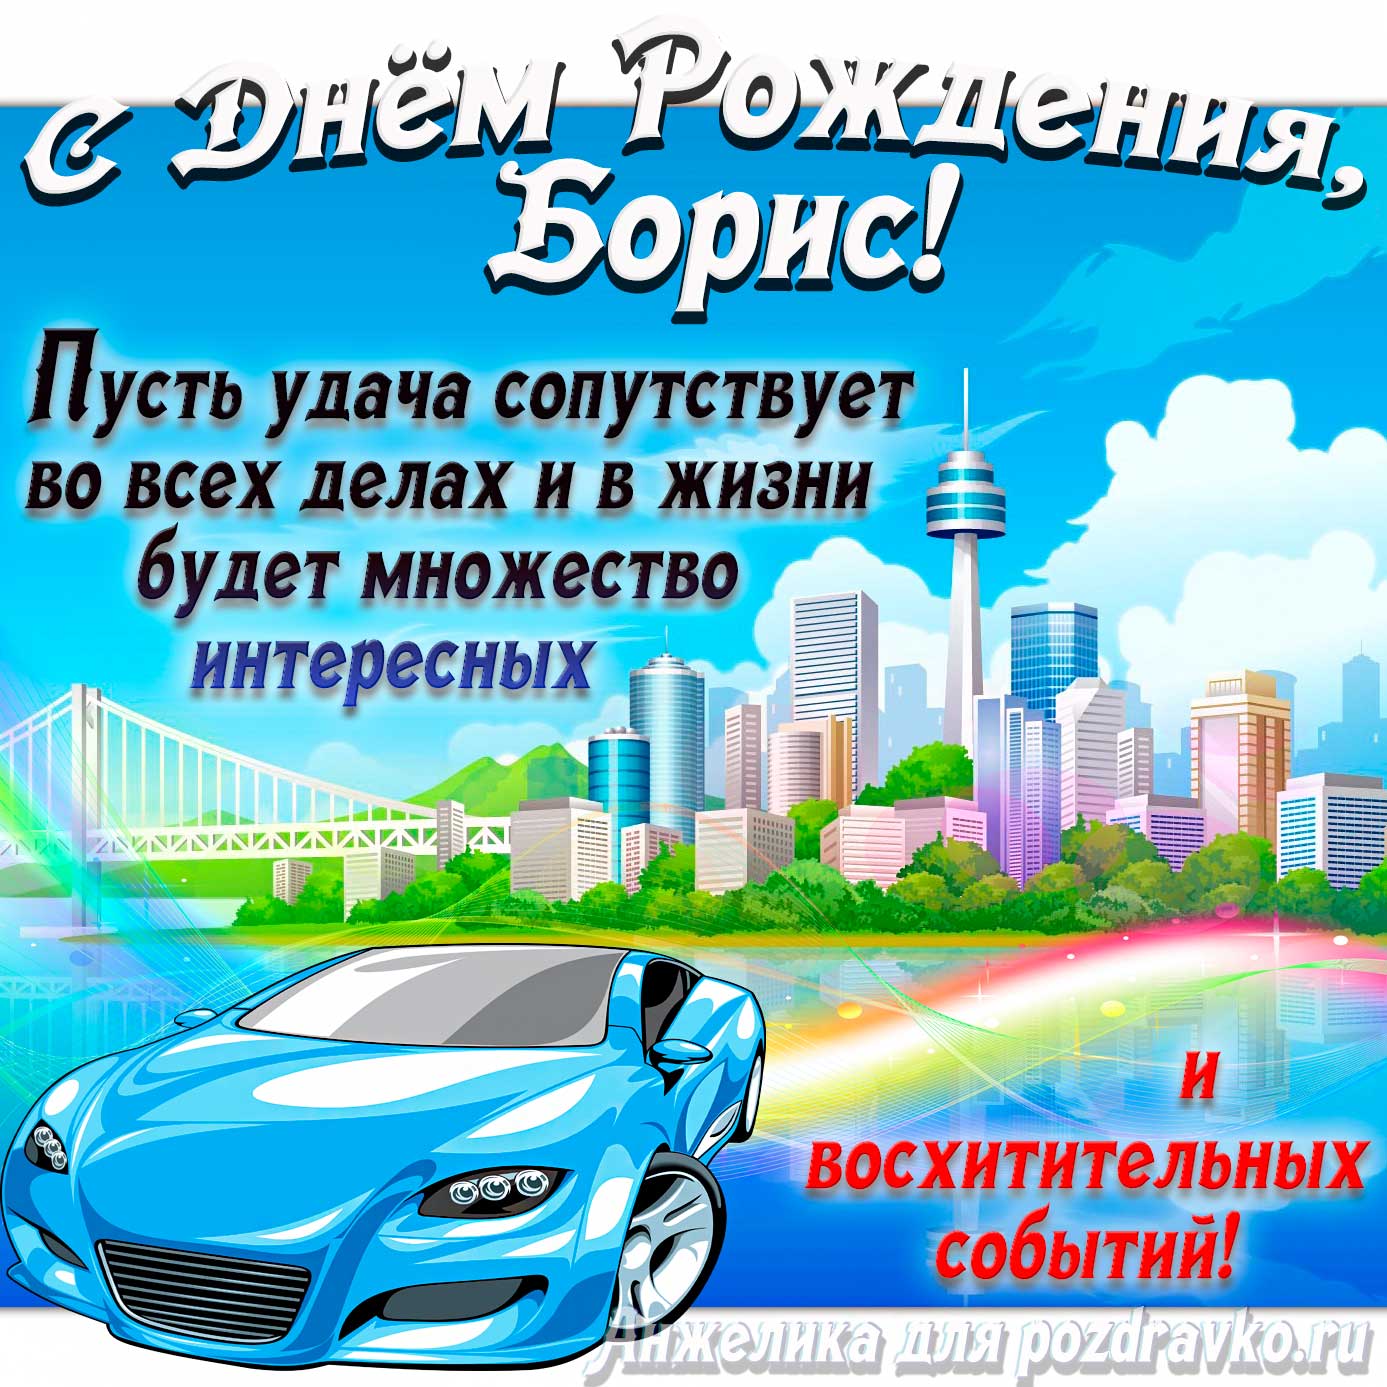 Открытка - с Днём Рождения Борис с голубой машиной и пожеланием. Скачать бесплатно или отправить картинку.